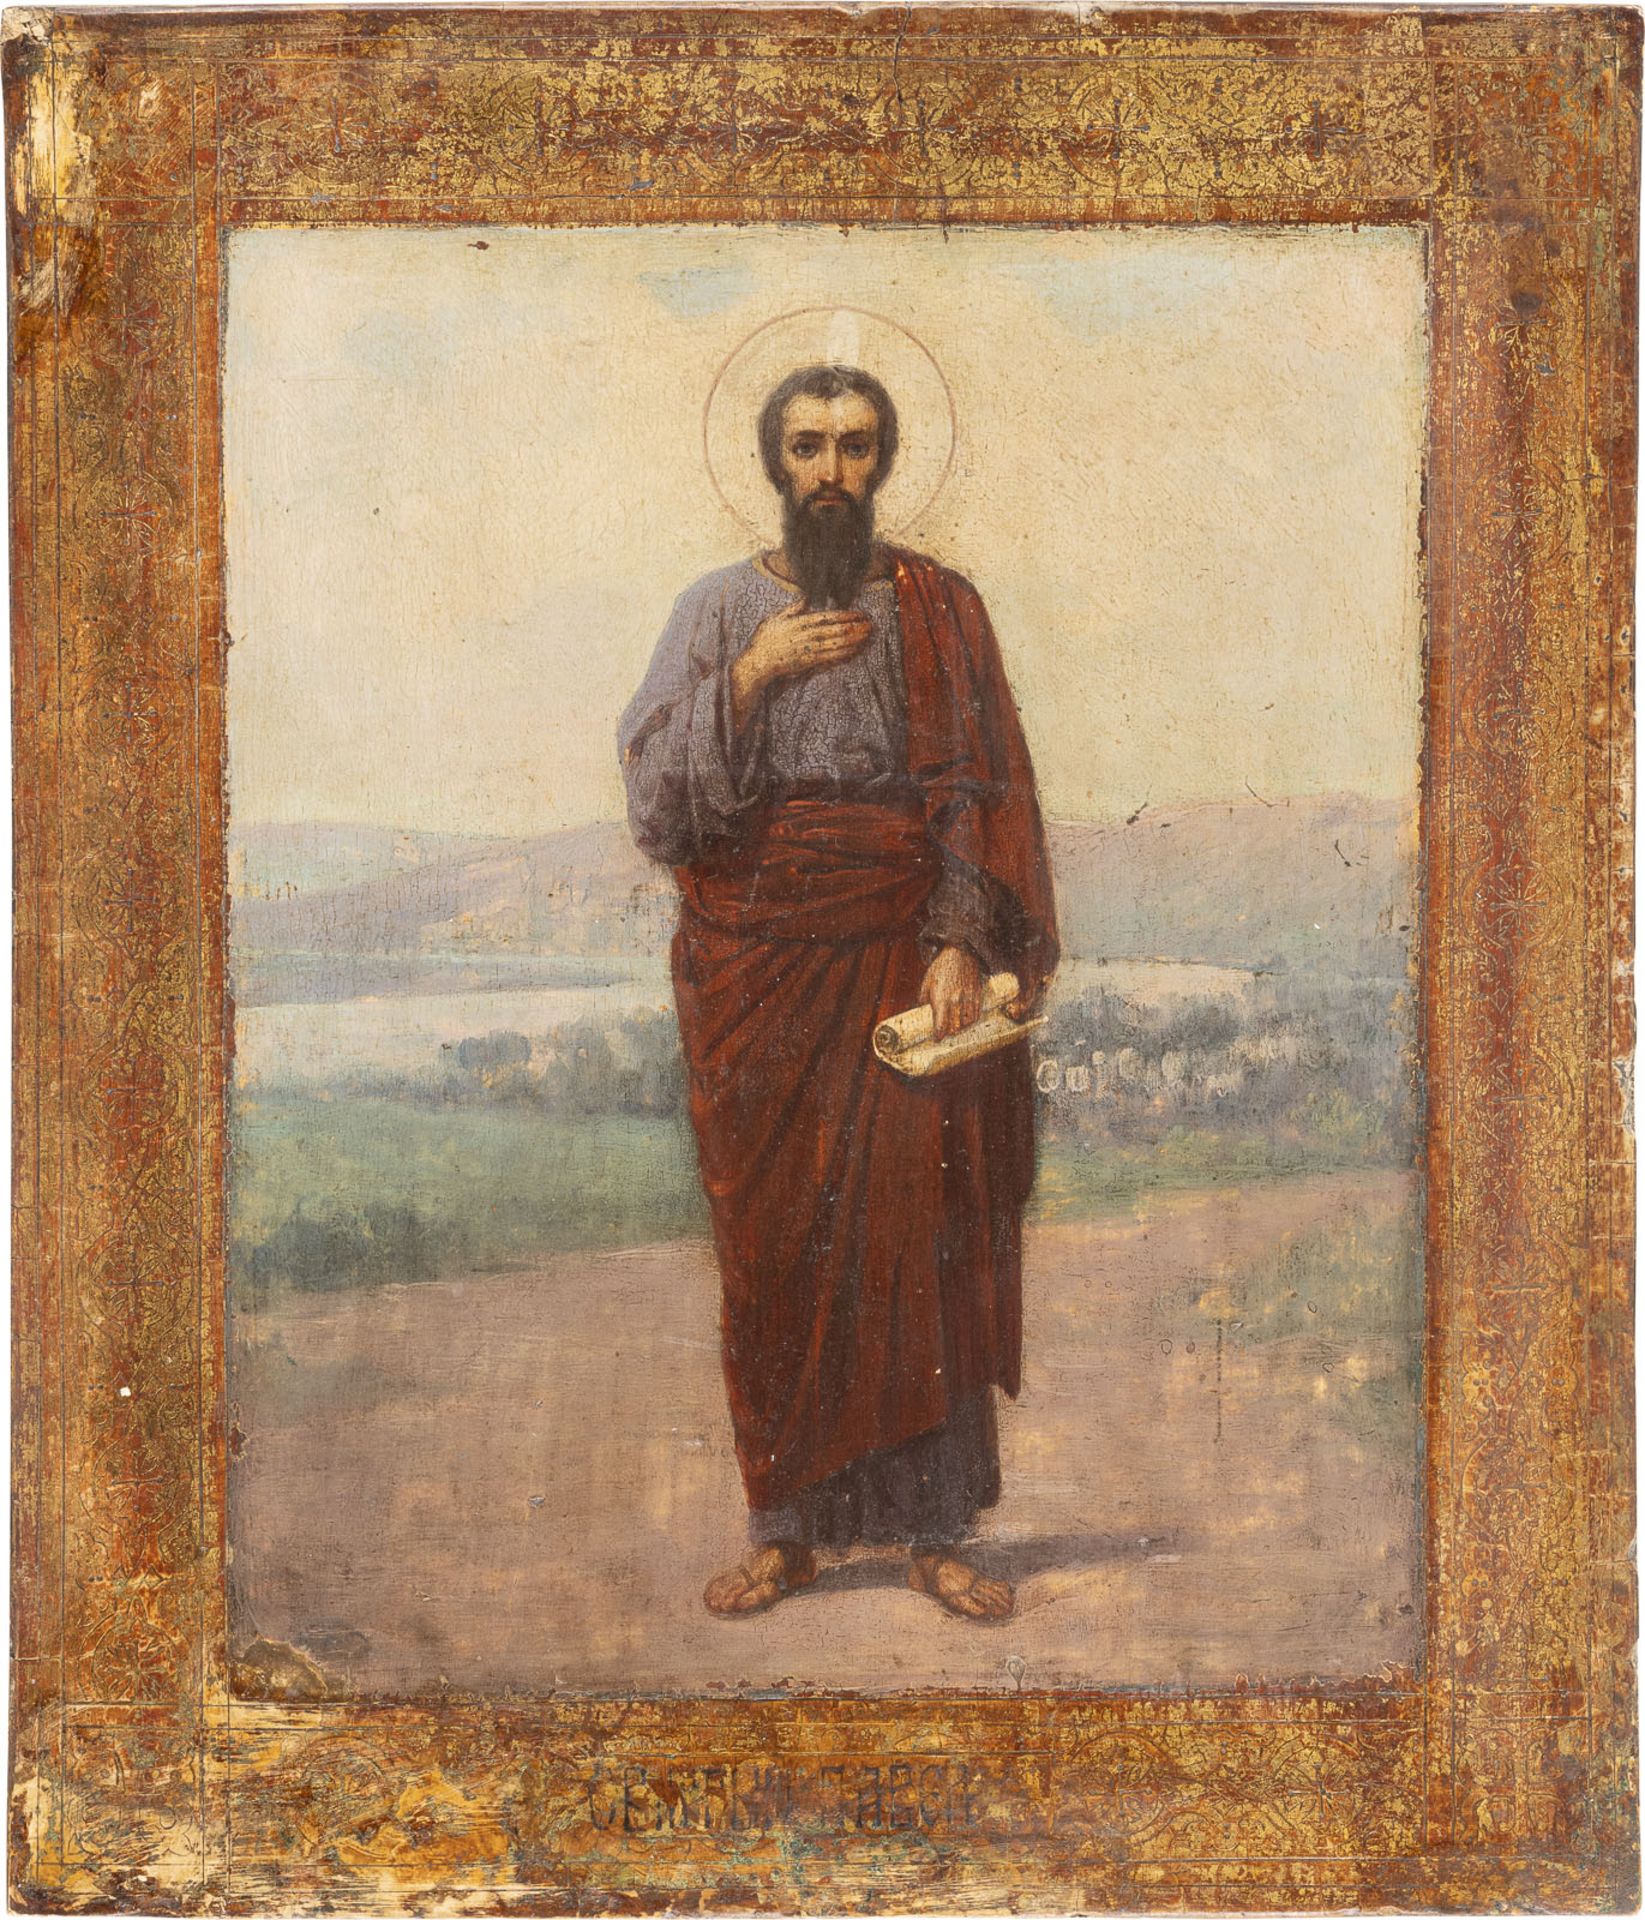 IKONE MIT DEM APOSTEL PAULUS  - Bild 3 aus 3